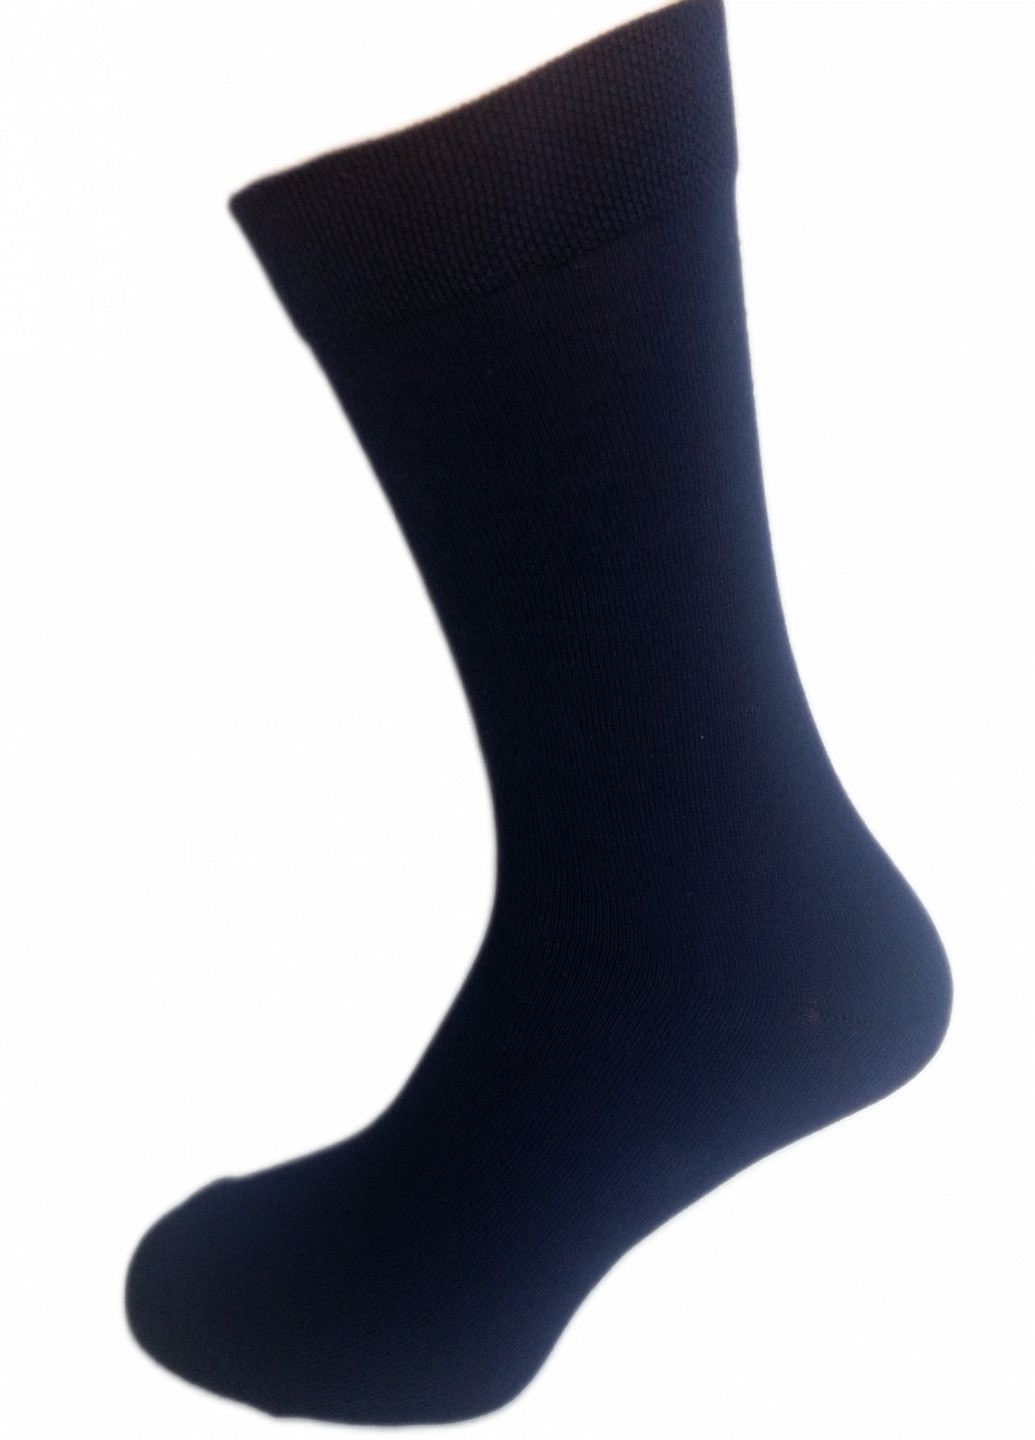 Шкарпетки чоловічі ТМ "Нова пара", 462 (в складі Акріл) НОВА ПАРА середня висота (257108319)